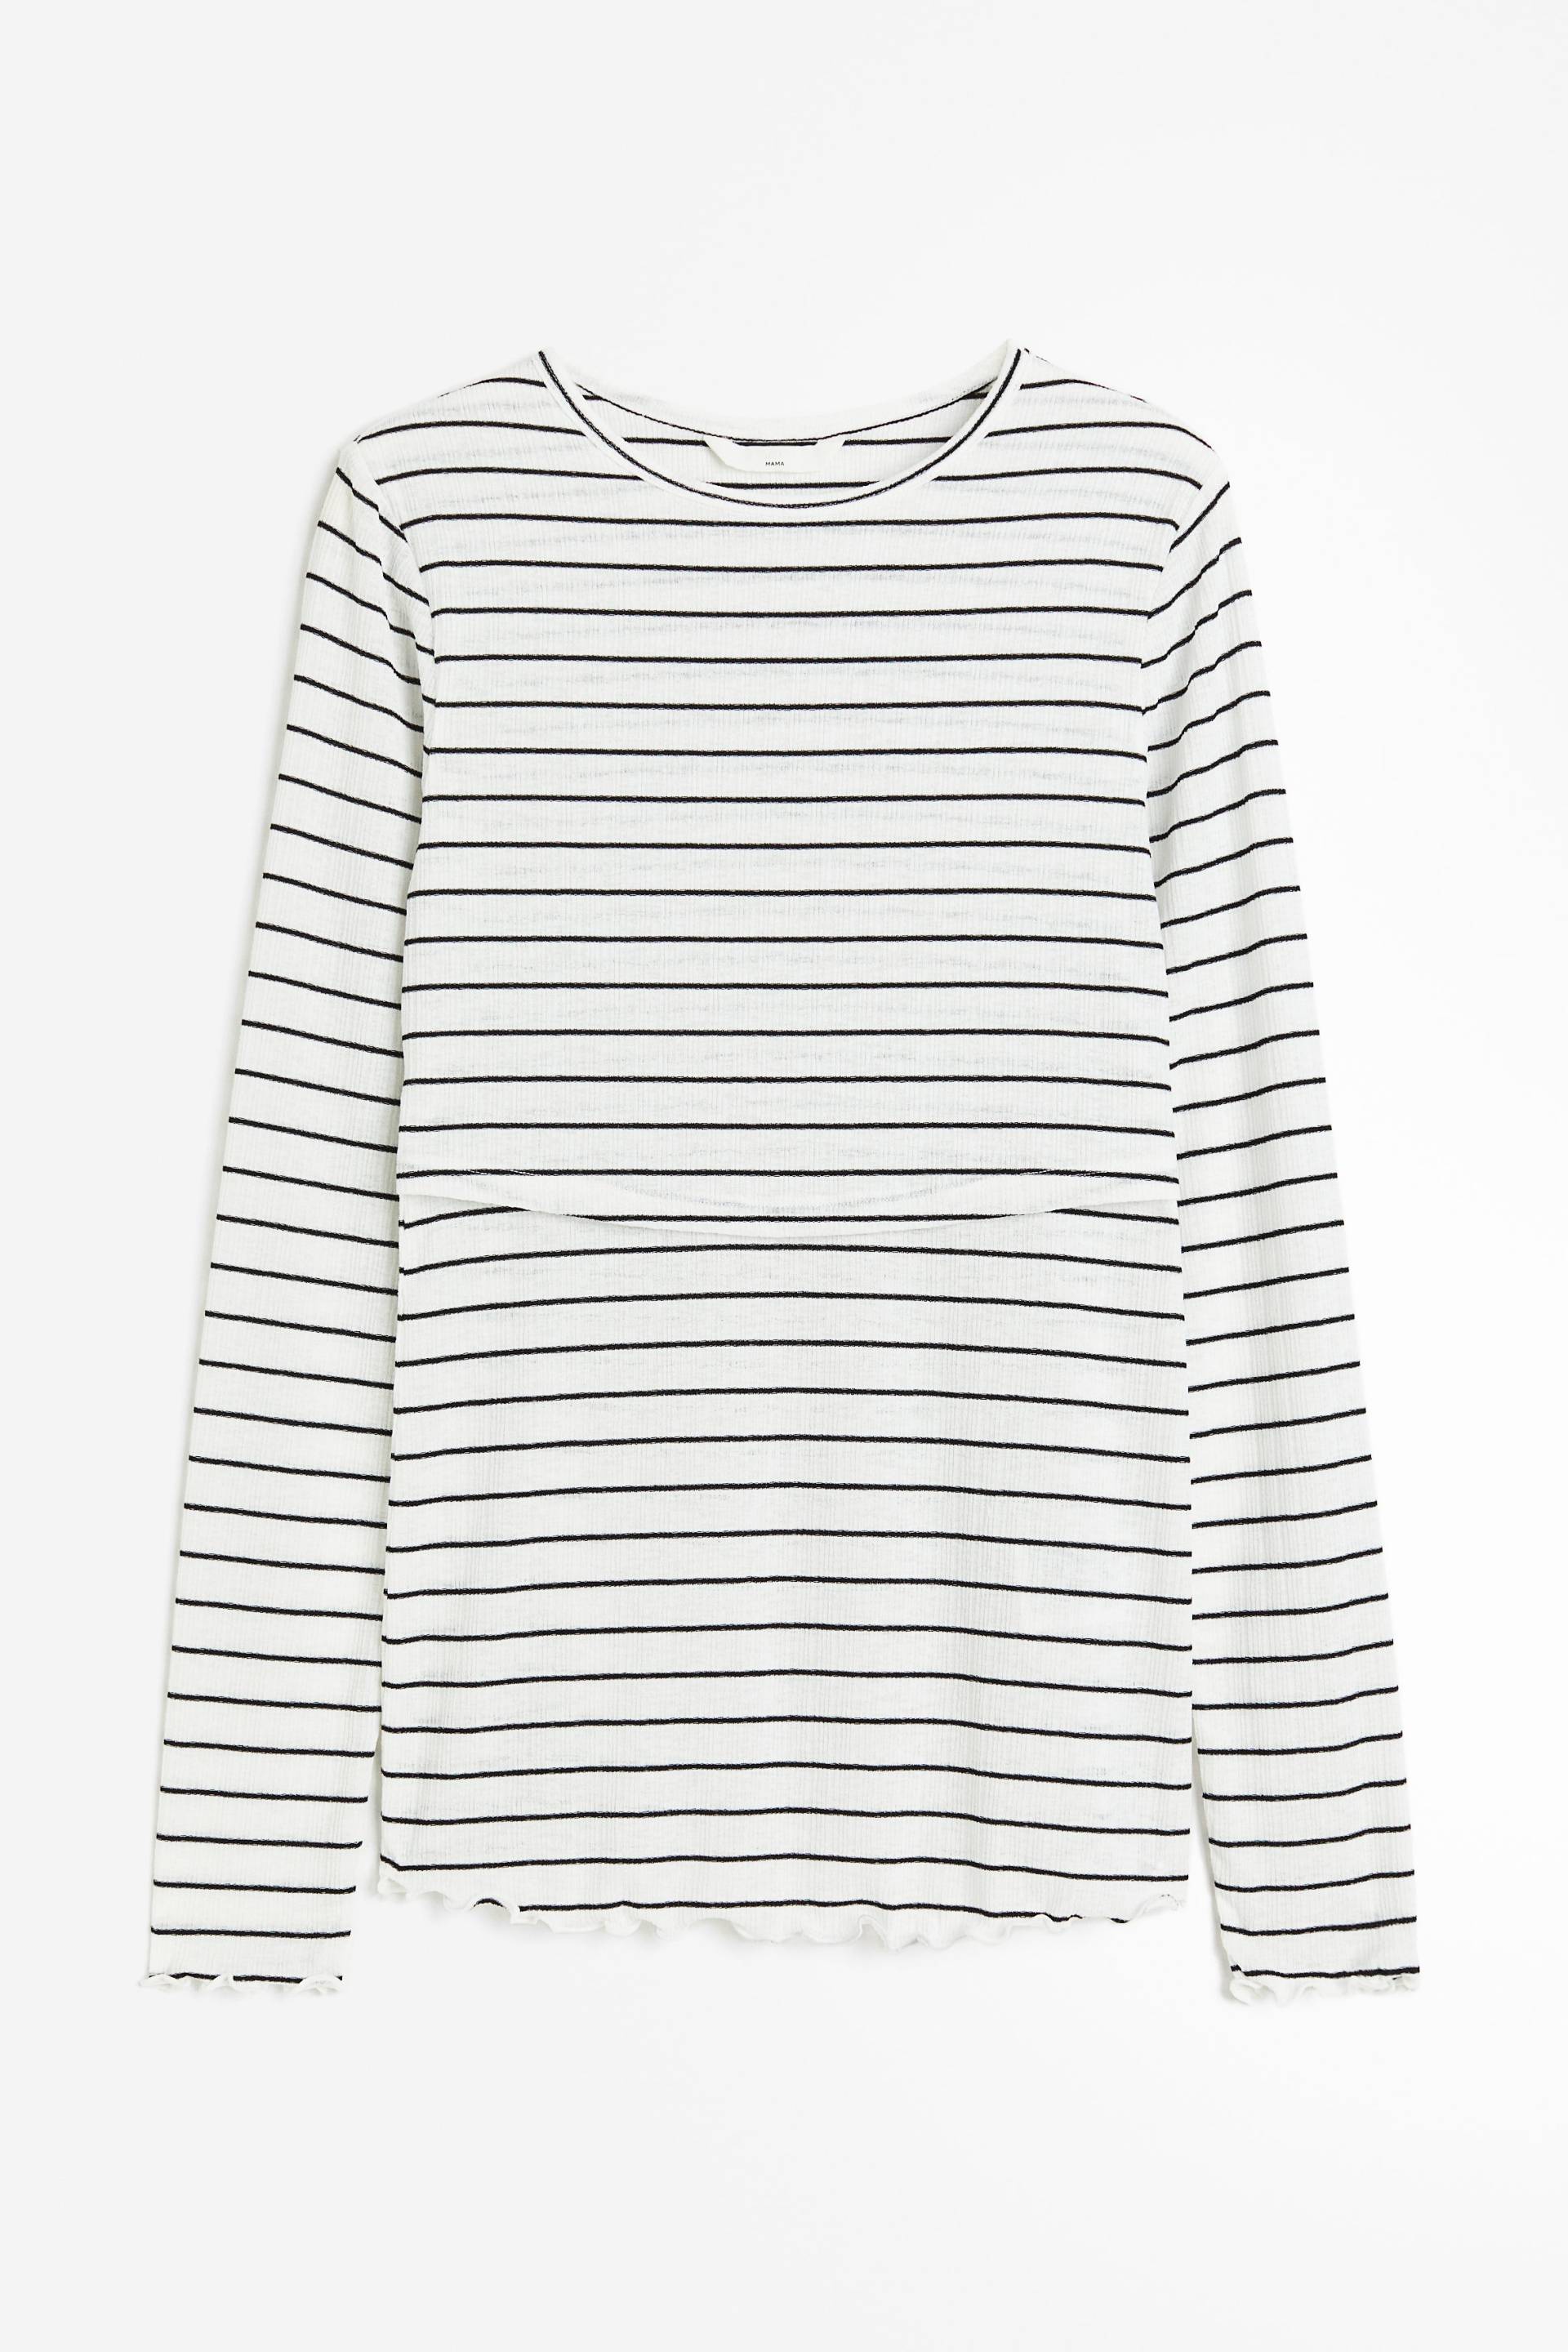 H&M MAMA Before & After Stillshirt Weiß/Schwarz gestreift, Tops in Größe XXL. Farbe: White/black striped von H&M